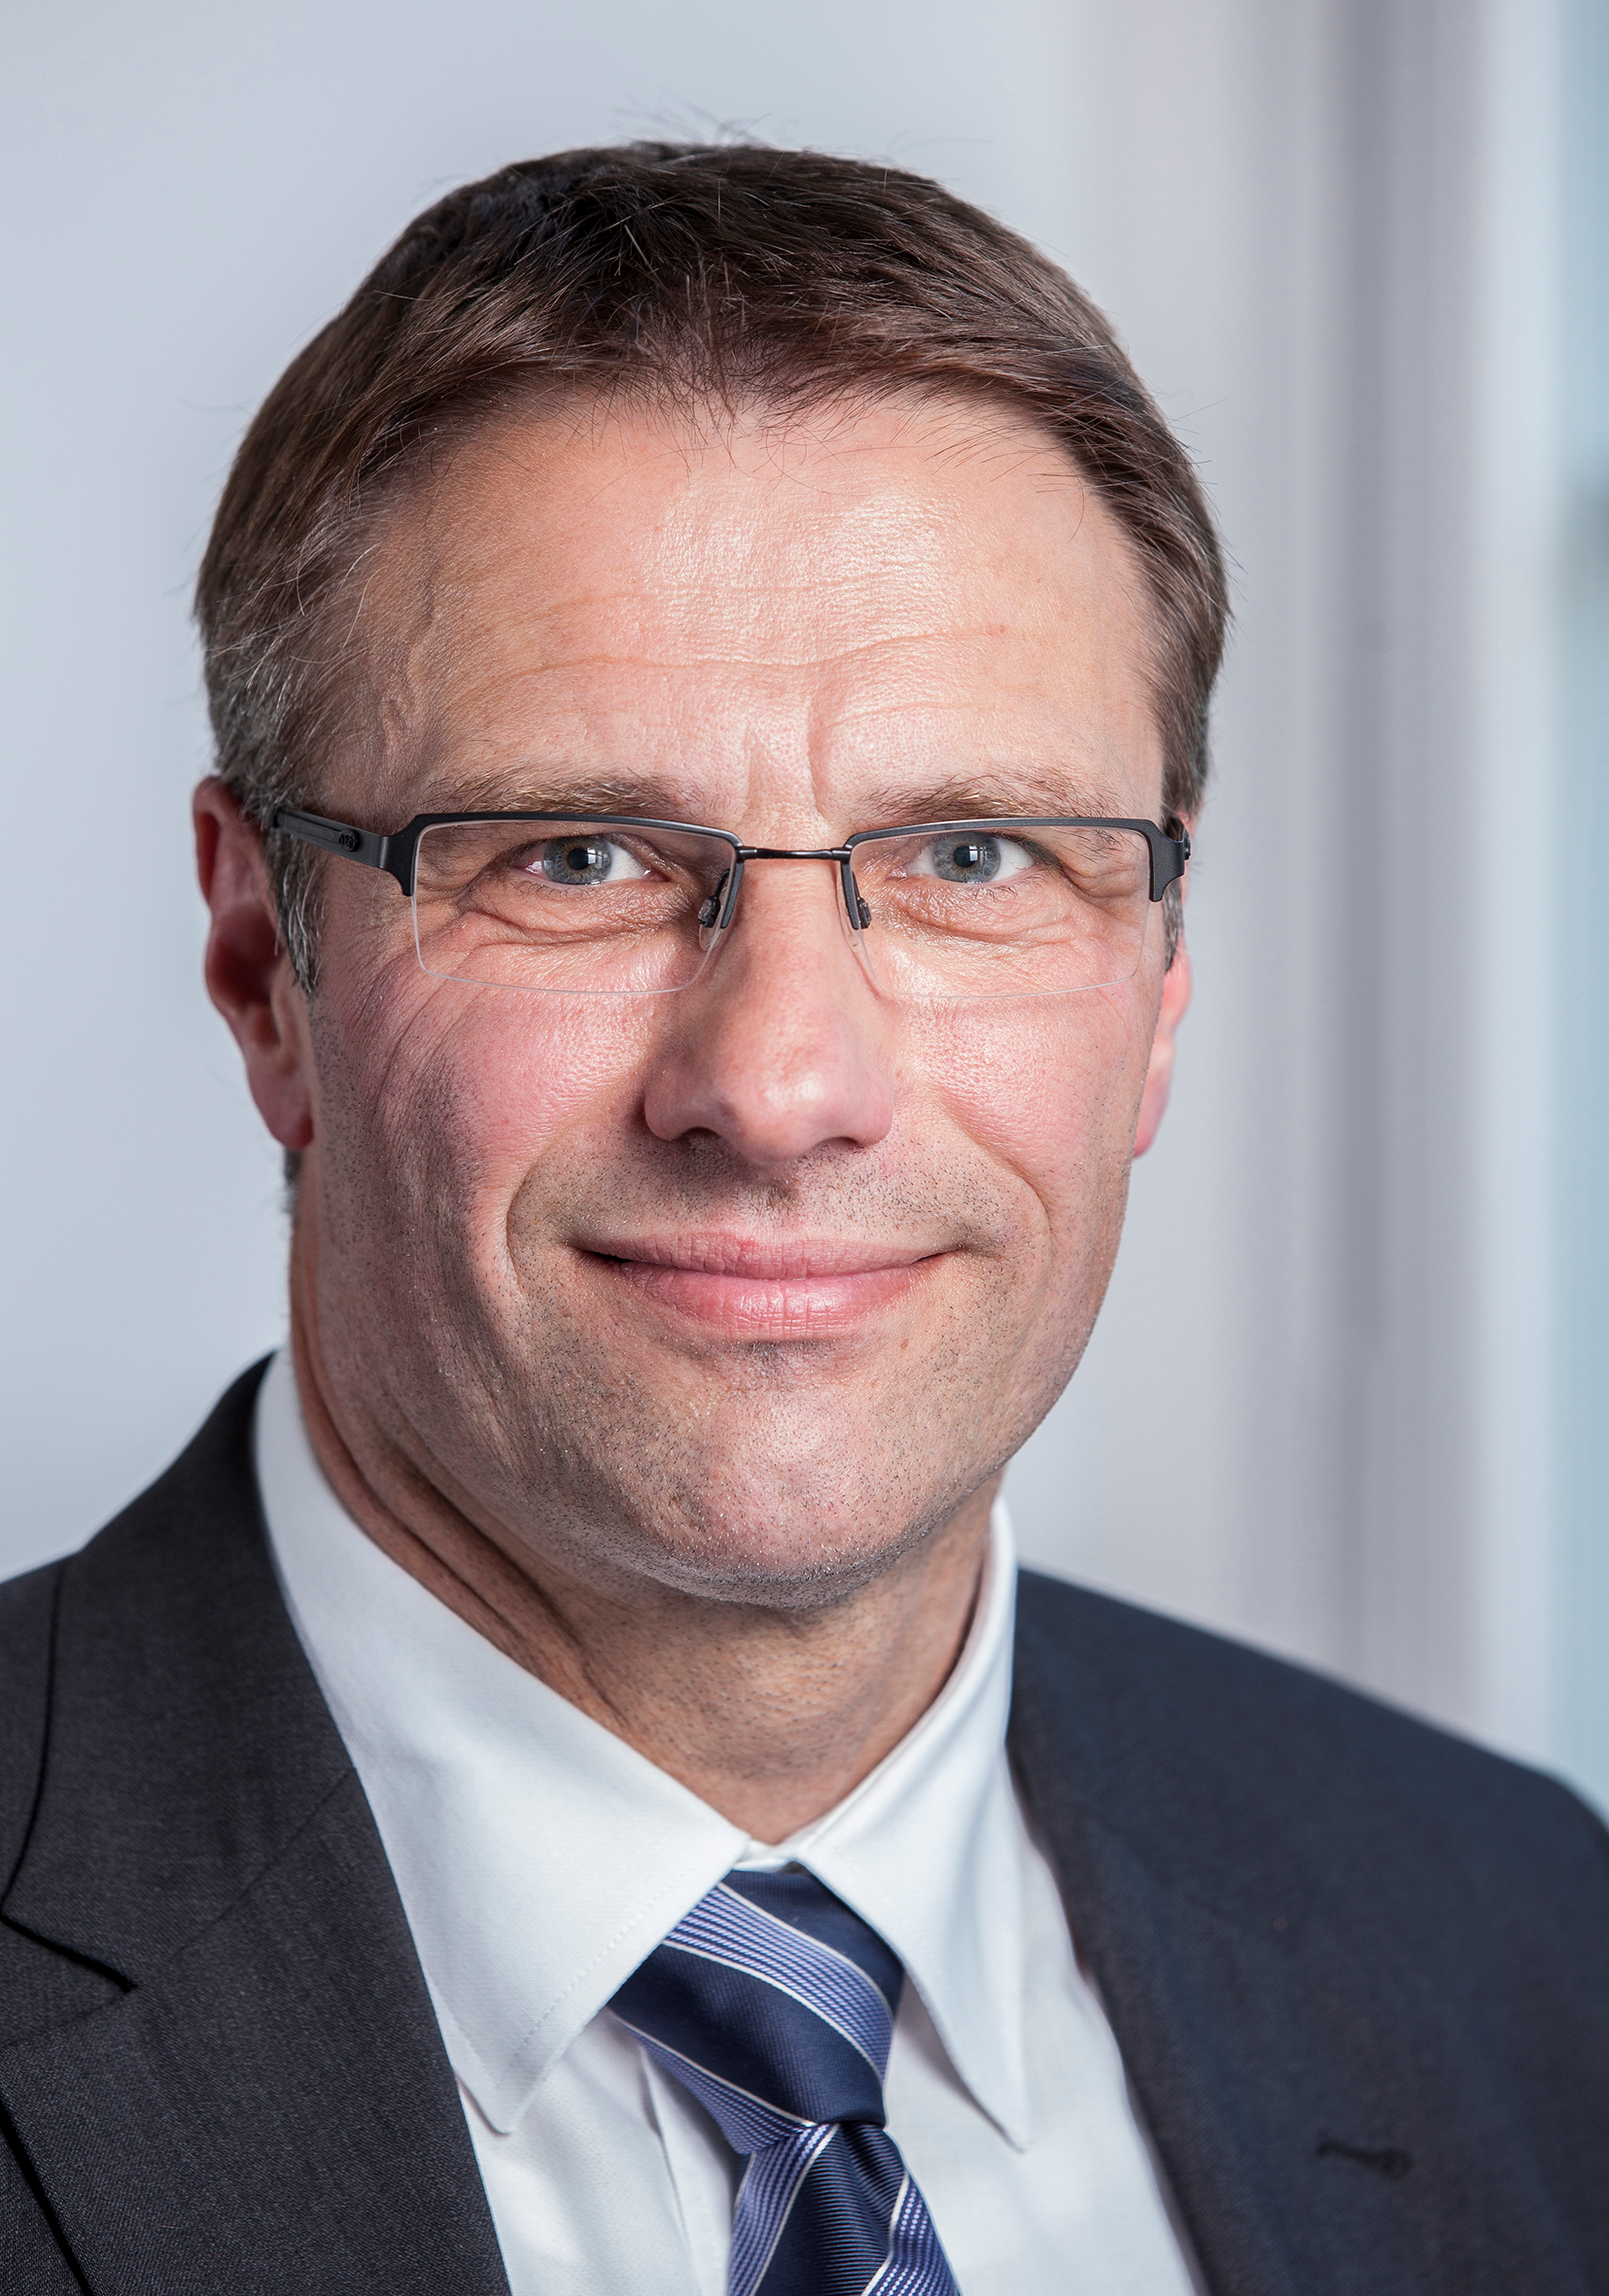 Portrait von Markus Gygax, CEO der Valiant Bank